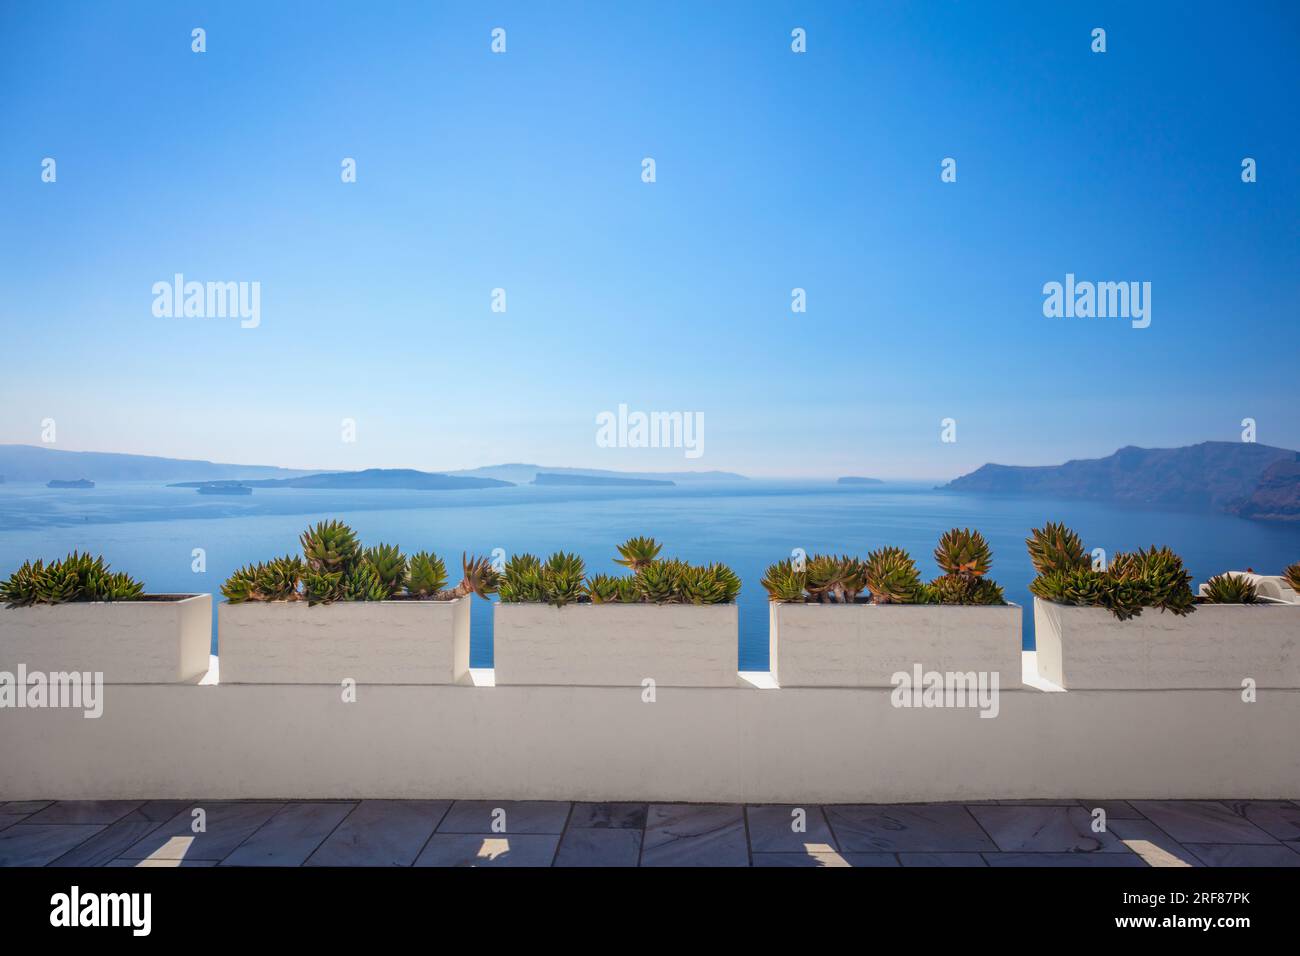 Contesto concettuale - Santorini. Grecia, isola di Santorini, Oia - architettura bianca, fiori e mare e cielo blu. Sfondo astratto, spazio vuoto. Foto Stock